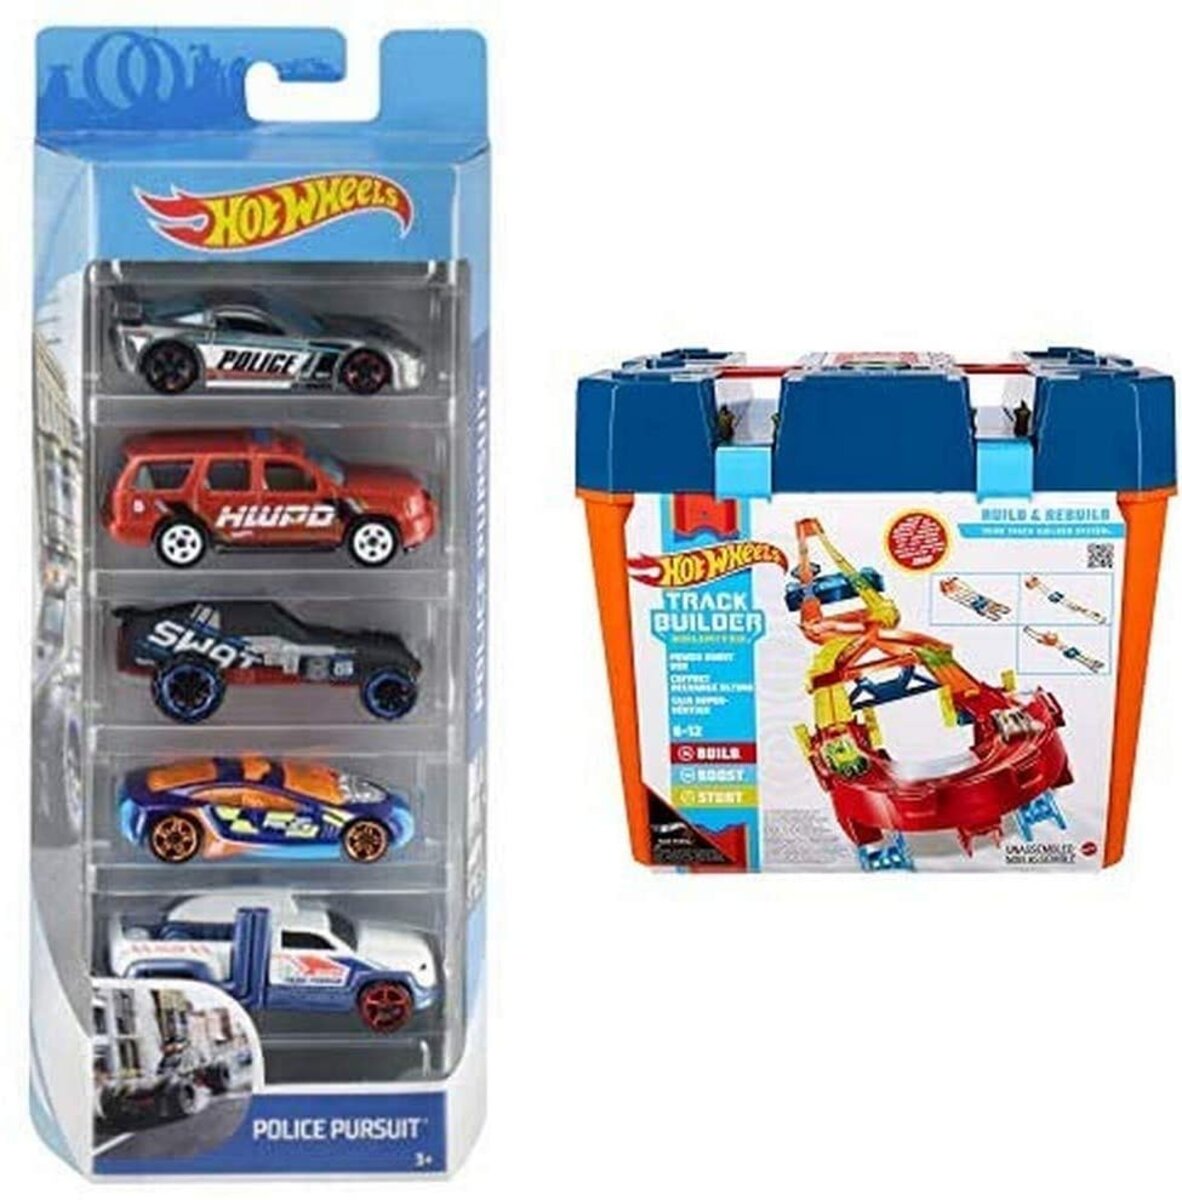 Coffret 50 véhicules pour enfant de petites voitures miniatures - La Poste